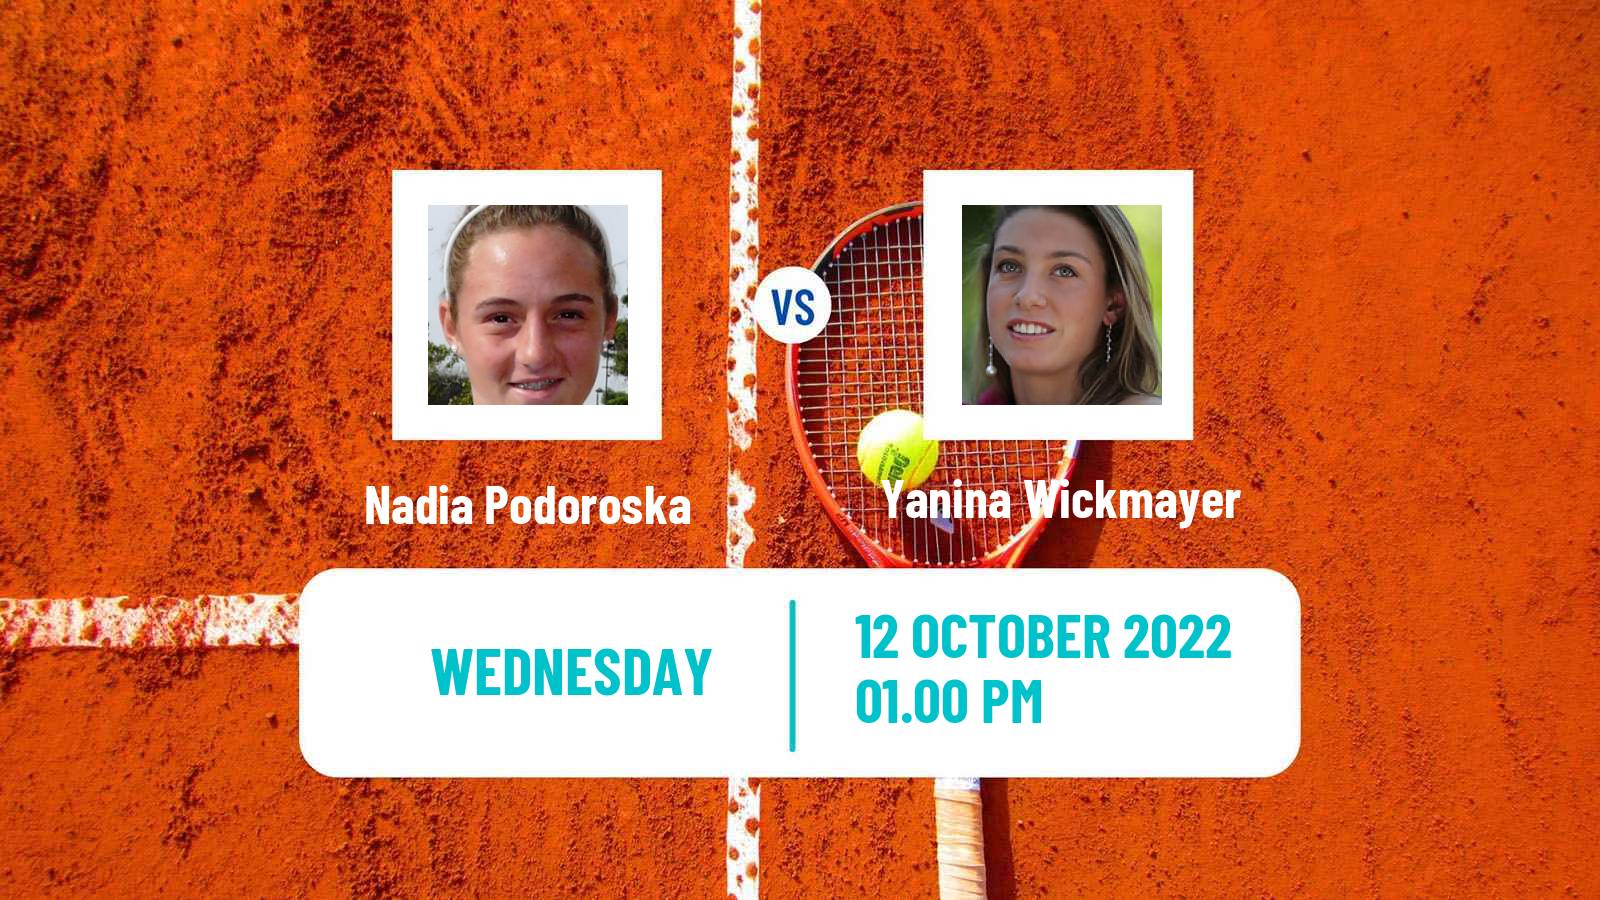 Tennis ITF Tournaments Nadia Podoroska - Yanina Wickmayer